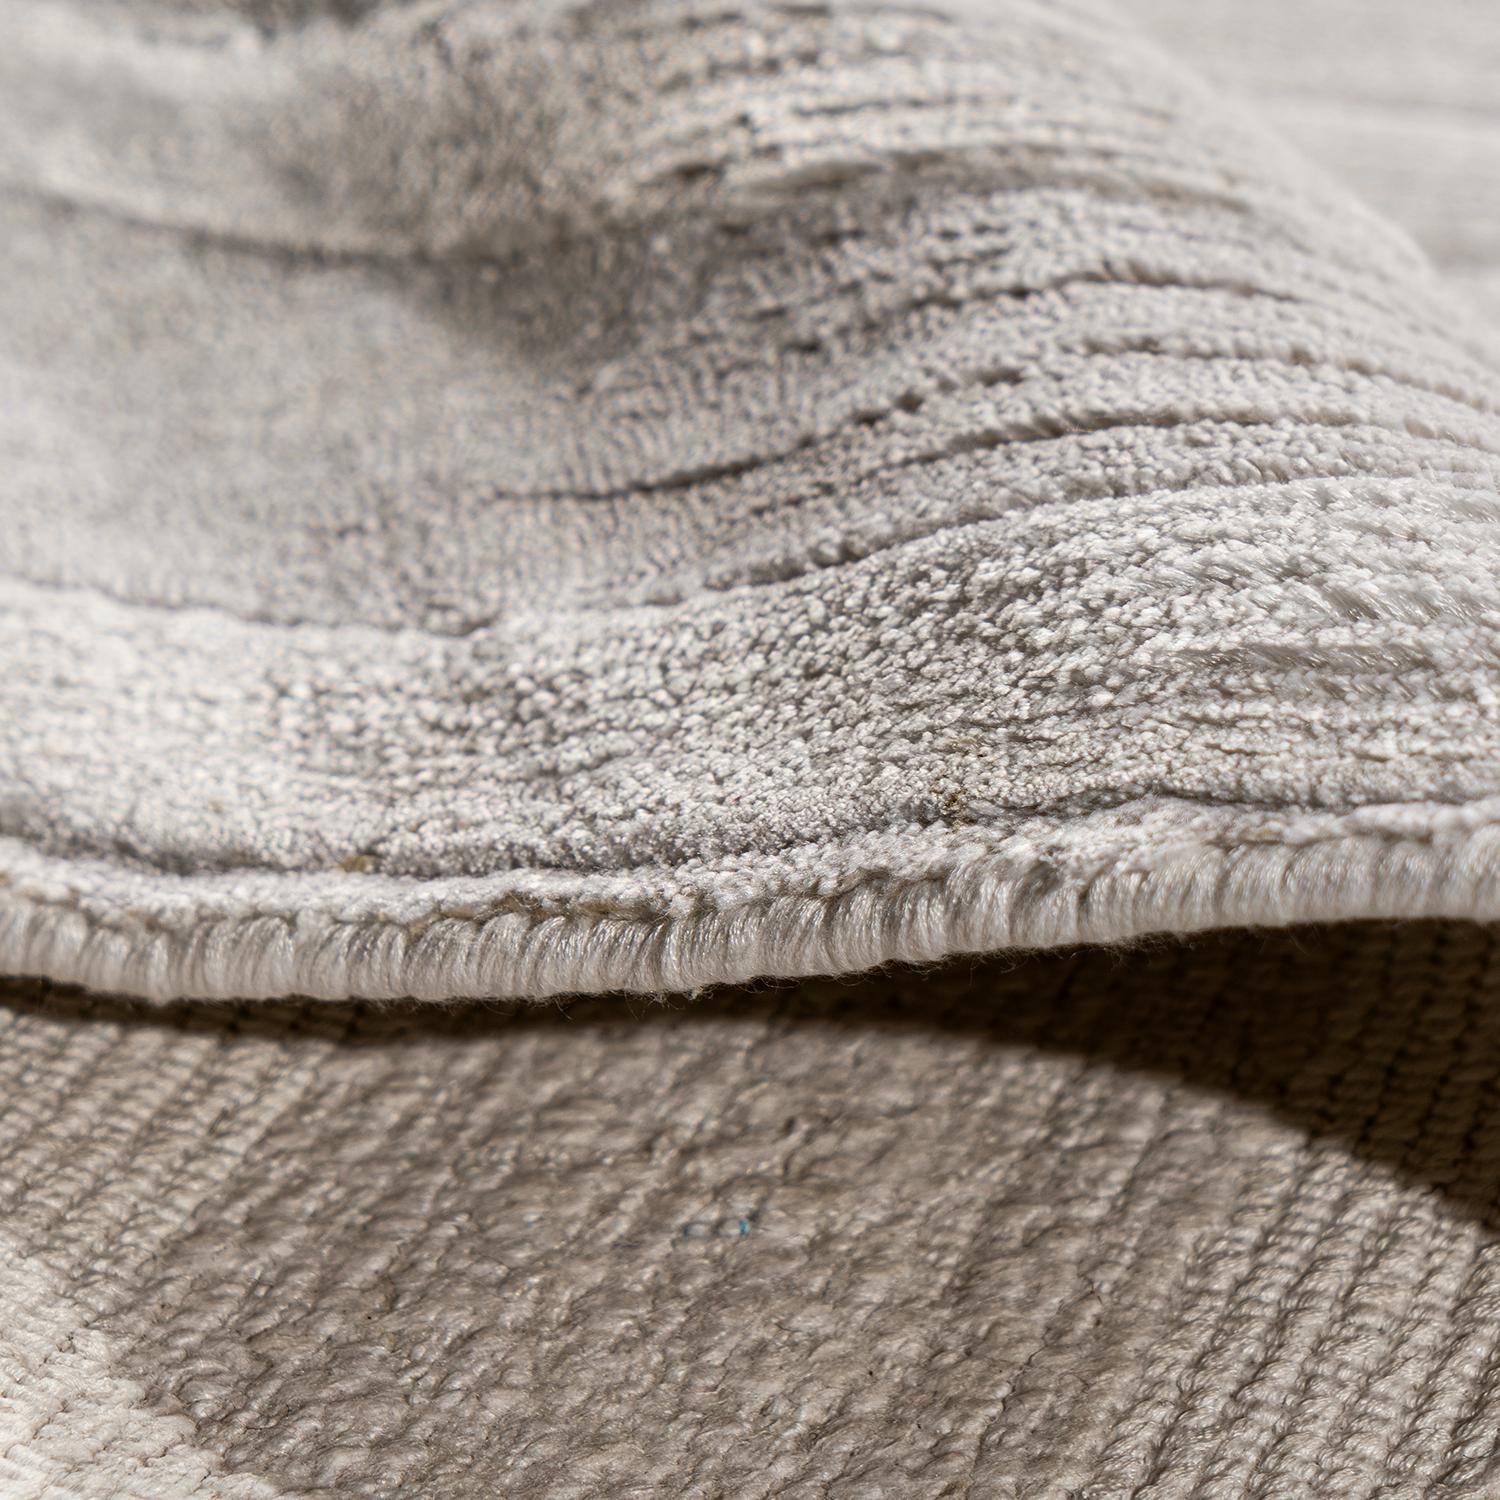 Abstrakter zeitgenössischer Teppich 8' X 10', ein neuer handgewebter zeitgenössischer Teppich aus Viskose, der ein seidig weiches Aussehen und Gefühl vermittelt.